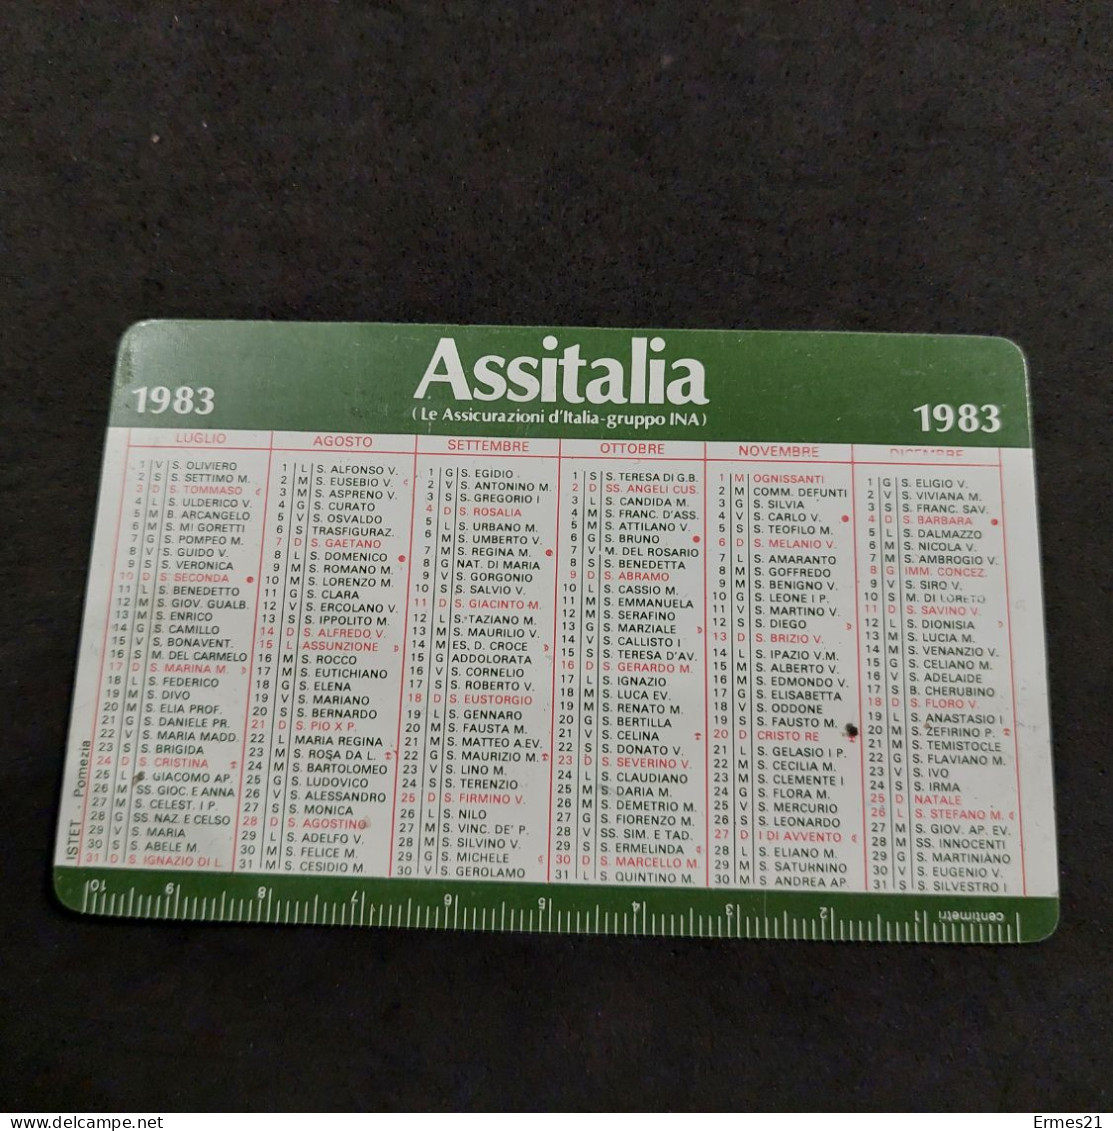 Calendarietto Ina-Assitalia 1983. Assicurazioni D'italia. Condizioni Eccellenti. Nuovo. - Petit Format : 1981-90